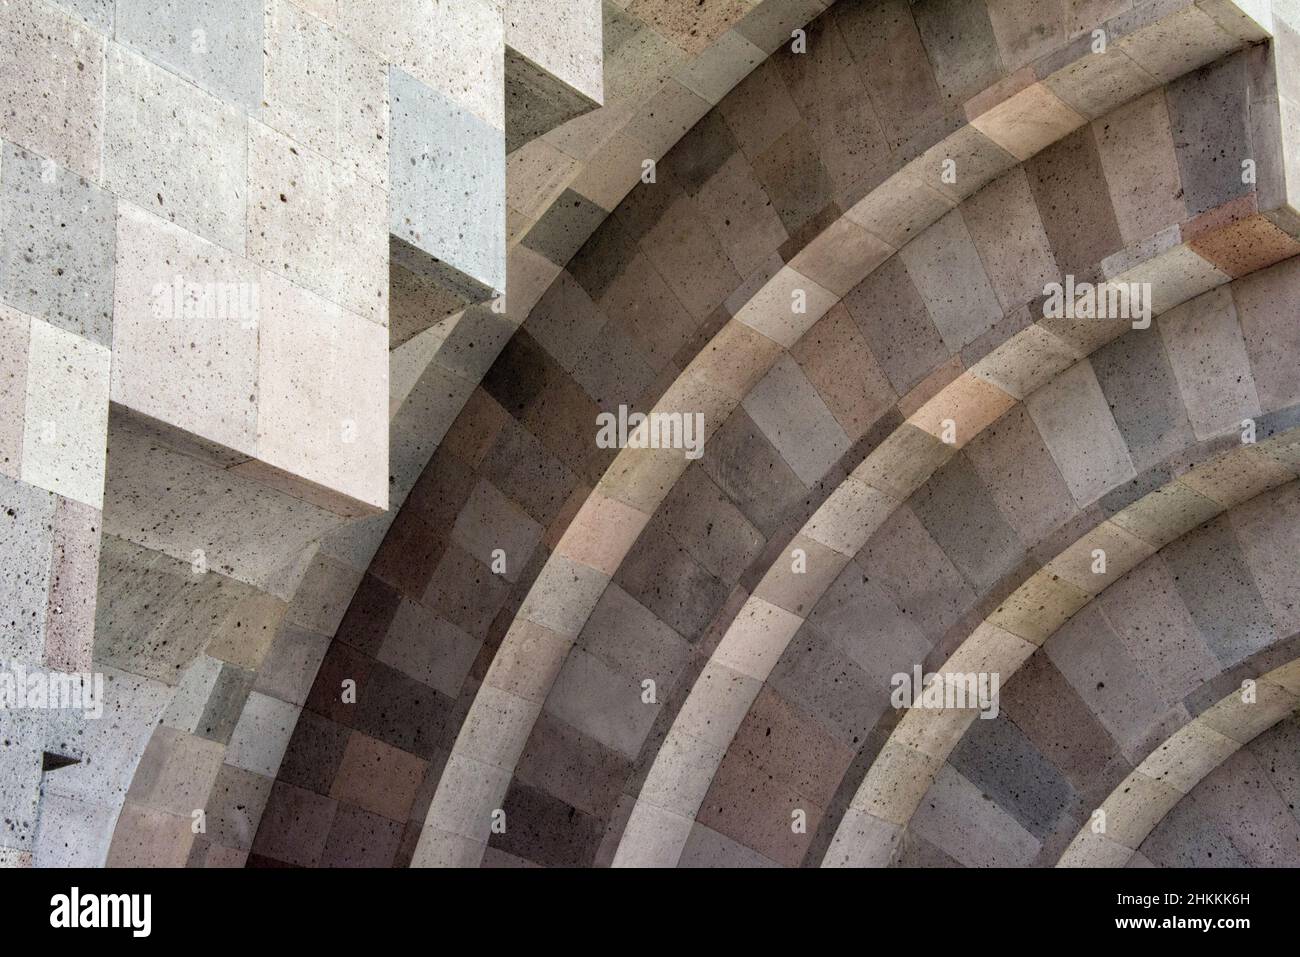 St. Gregory's Gate auf dem Komplex des Muttergottes von Heiligen Etchmiadzin, die Mutterkirche der armenischen Apostolischen Kirche, UNESCO-Weltkulturerbe Stockfoto